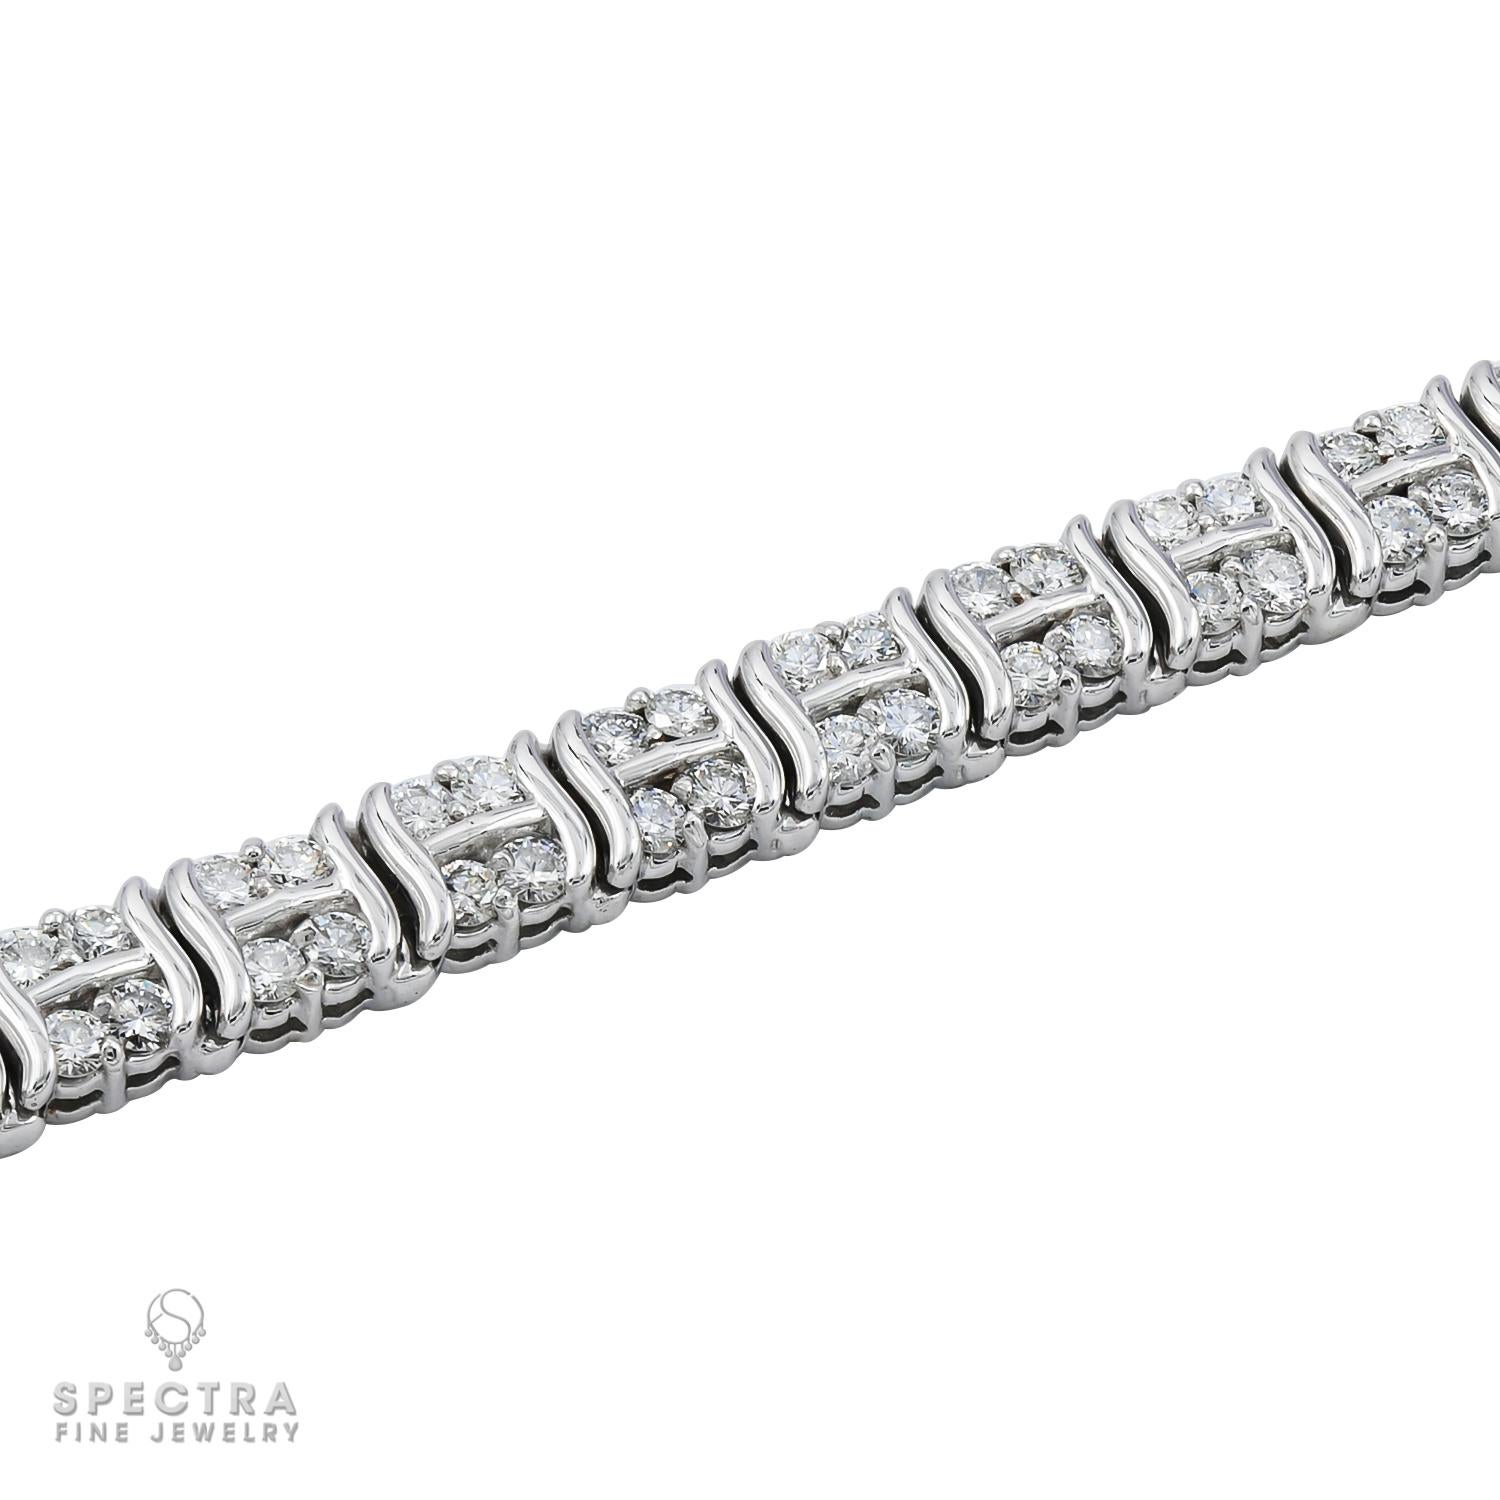 Un bracelet linéaire fait de diamants en or blanc 14k.
104 diamants ronds, pesant au total 5,2 carats, la plupart de couleur H-I et de pureté VS-SI.
Chaque diamant fait 0,05 carat.
La longueur est de 7 pouces.
Poids brut 23,28 grammes.